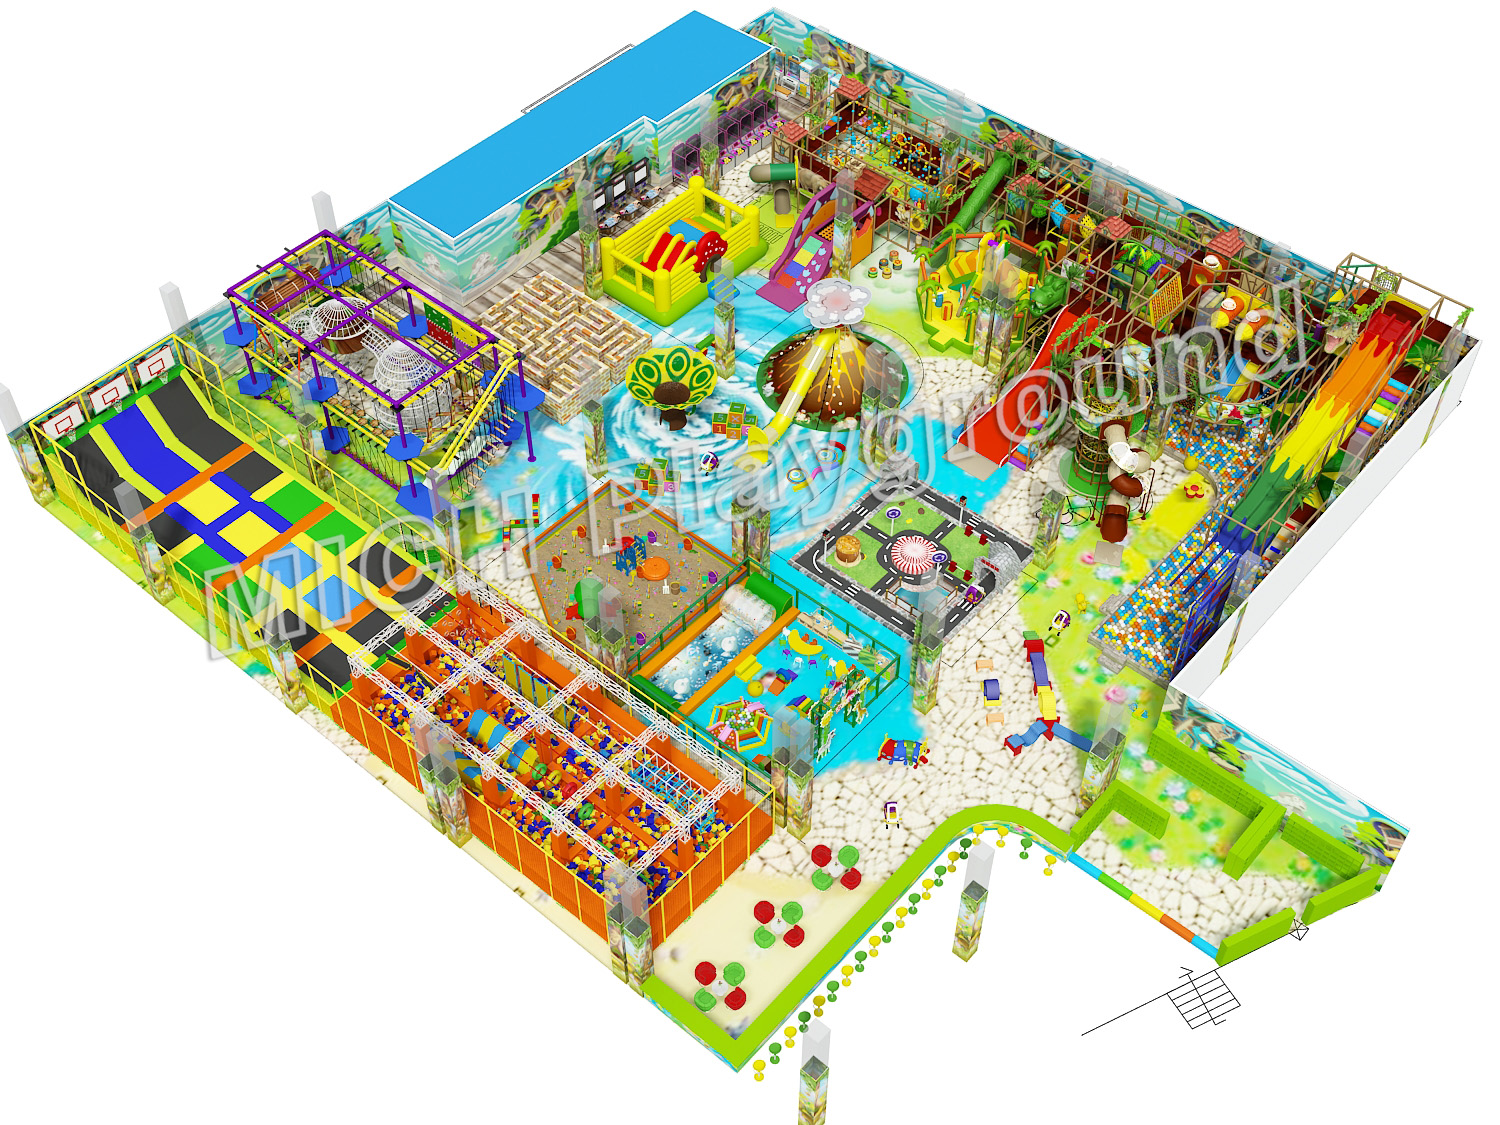 Large Commercial Indoor Amusement Park